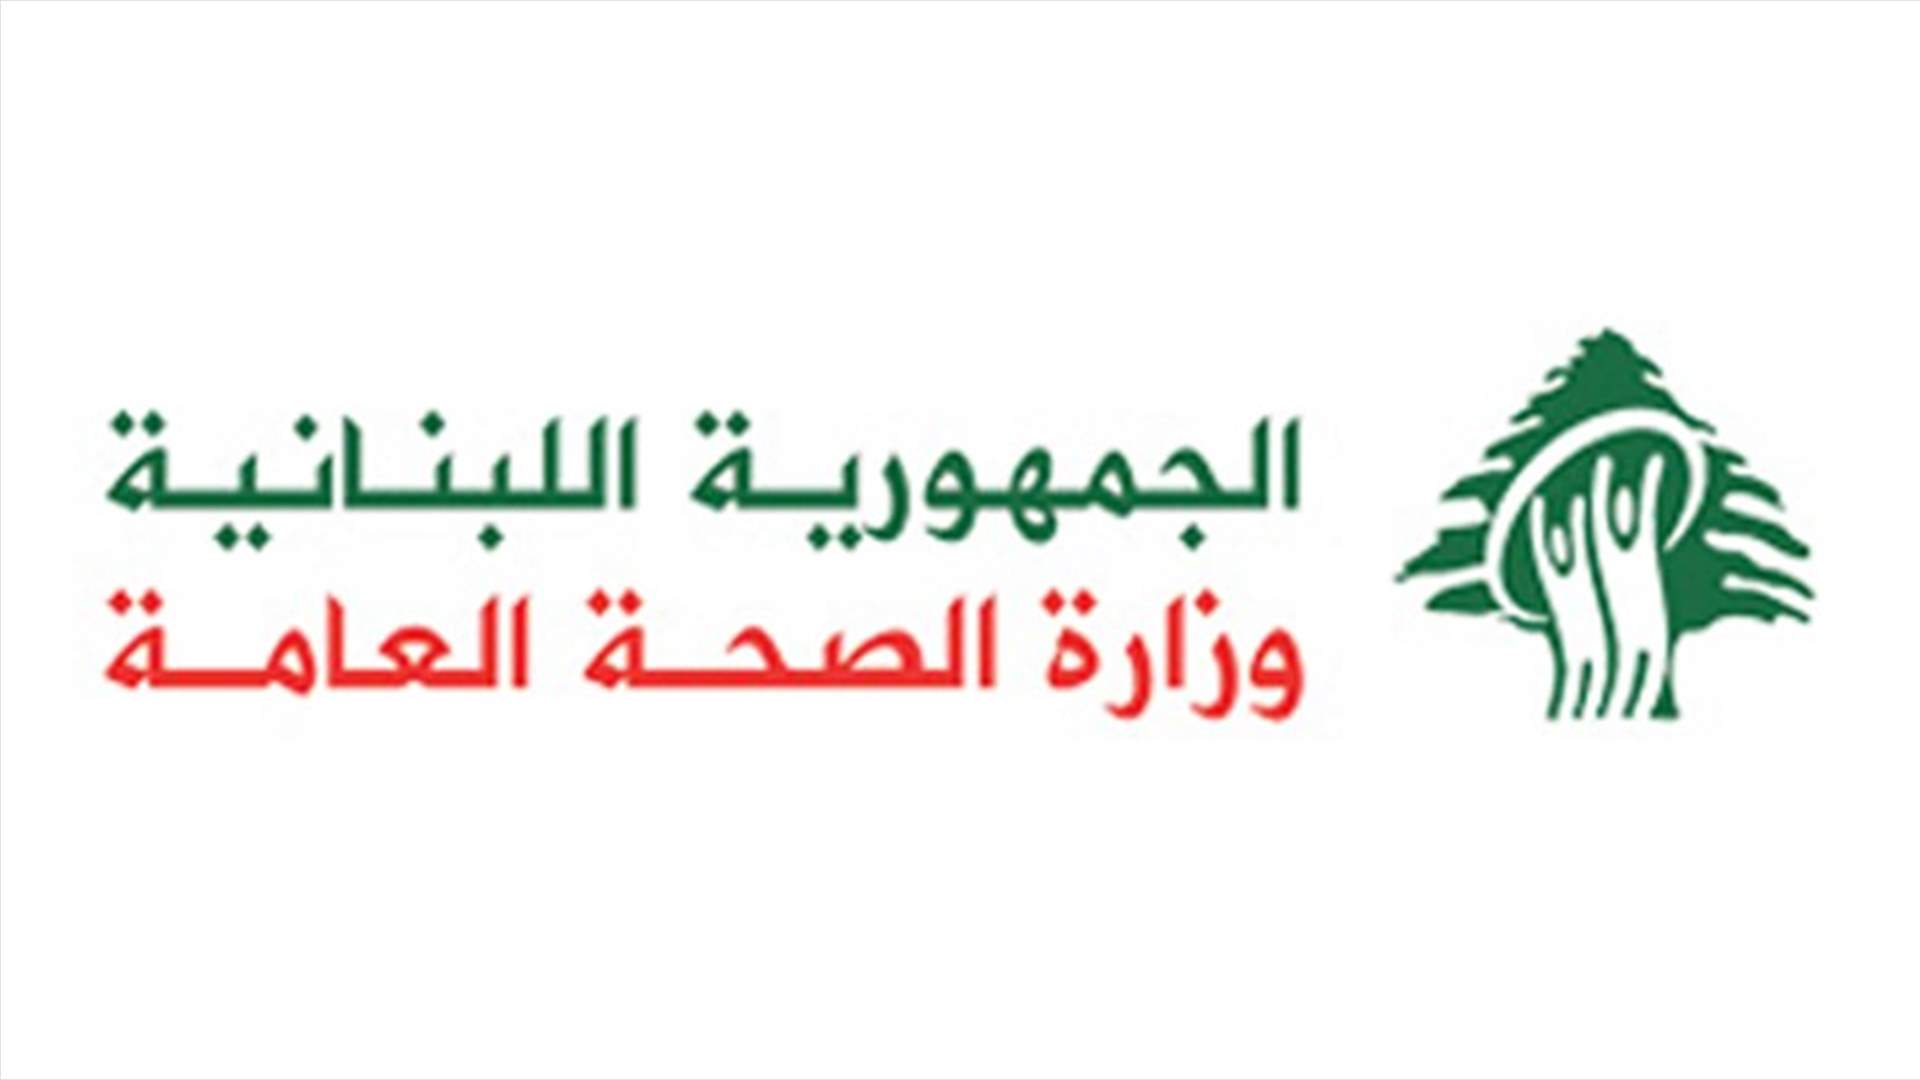 وزارة الصحة العامة تعلن تسجيل اصابات جديدة بكورونا في لبنان... كم بلغ العدد؟